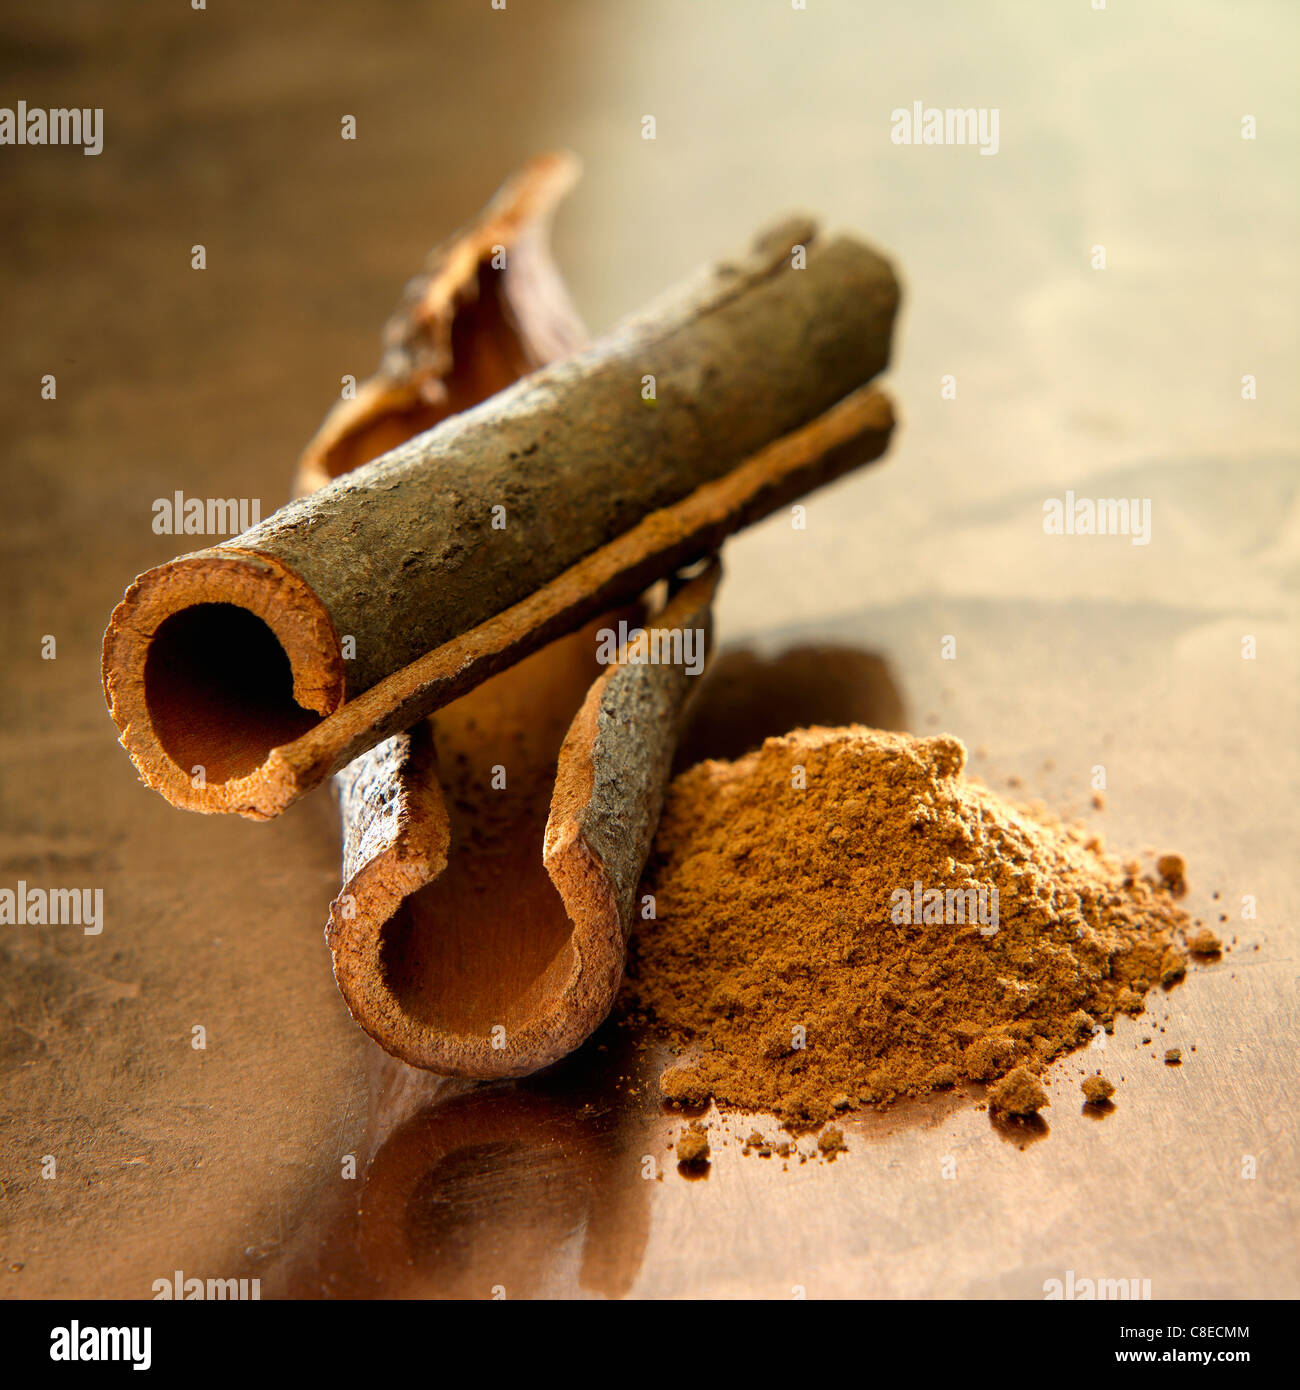 Chinese cinnamon sticks and powder Stock Photo